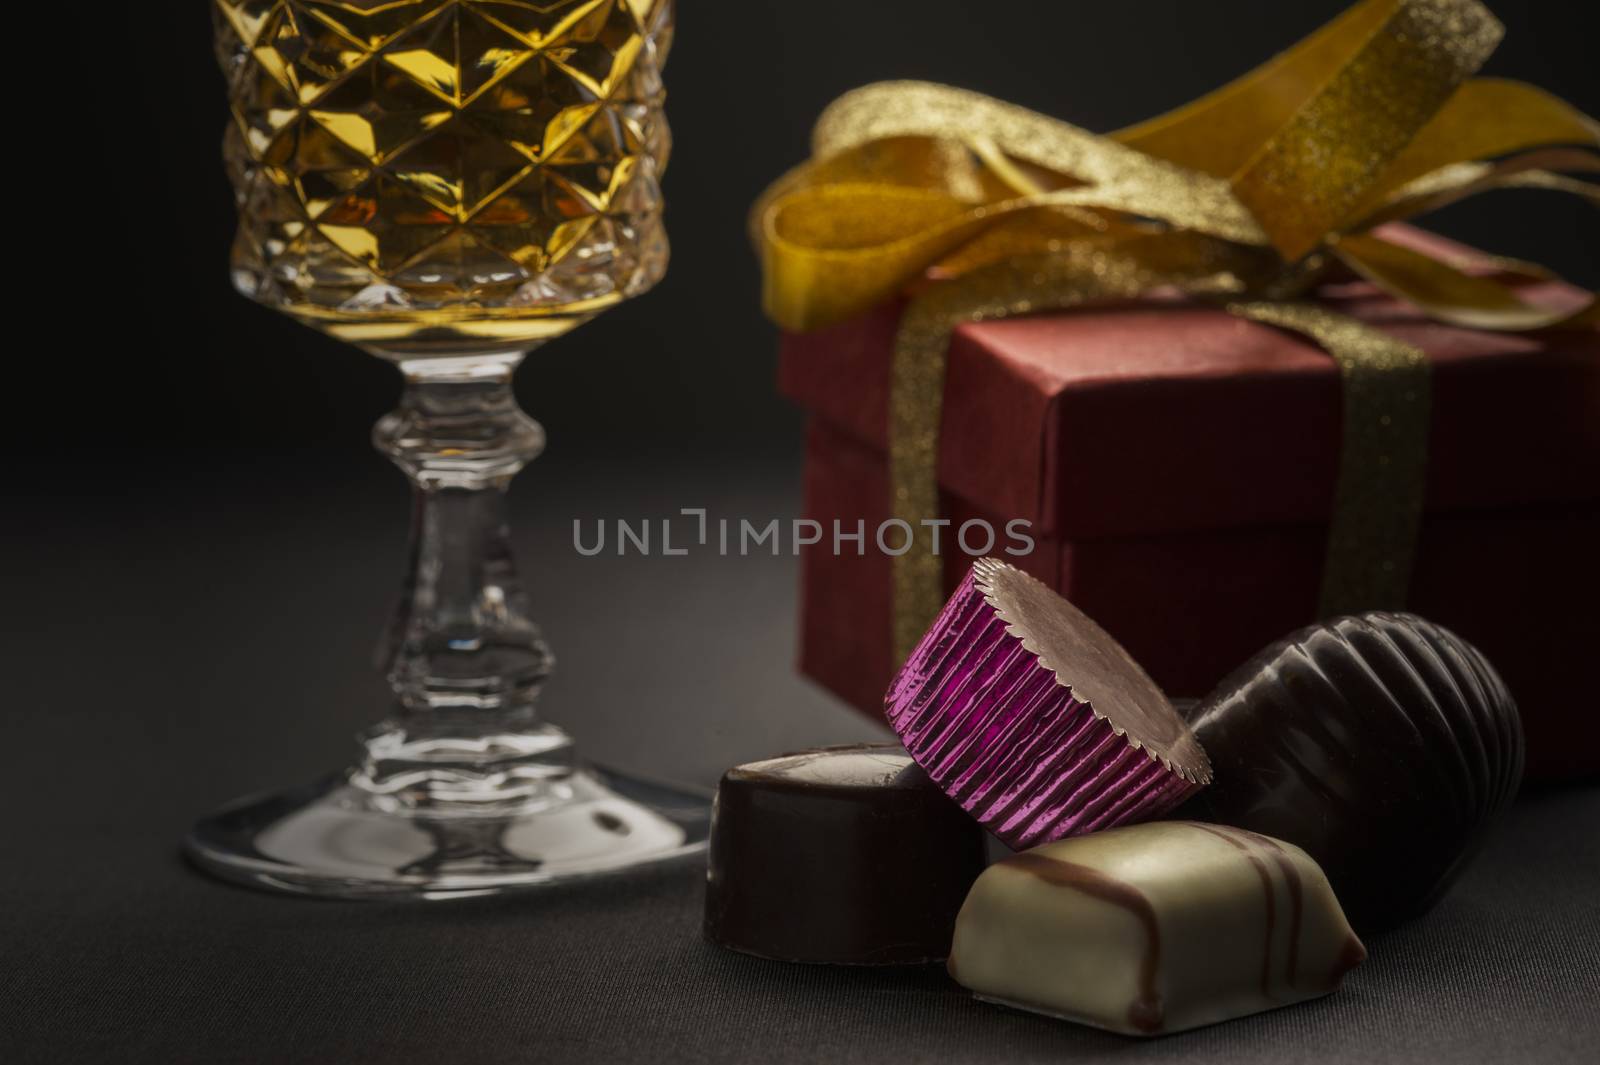 Delicious handmade luxury chocolates by MOELLERTHOMSEN